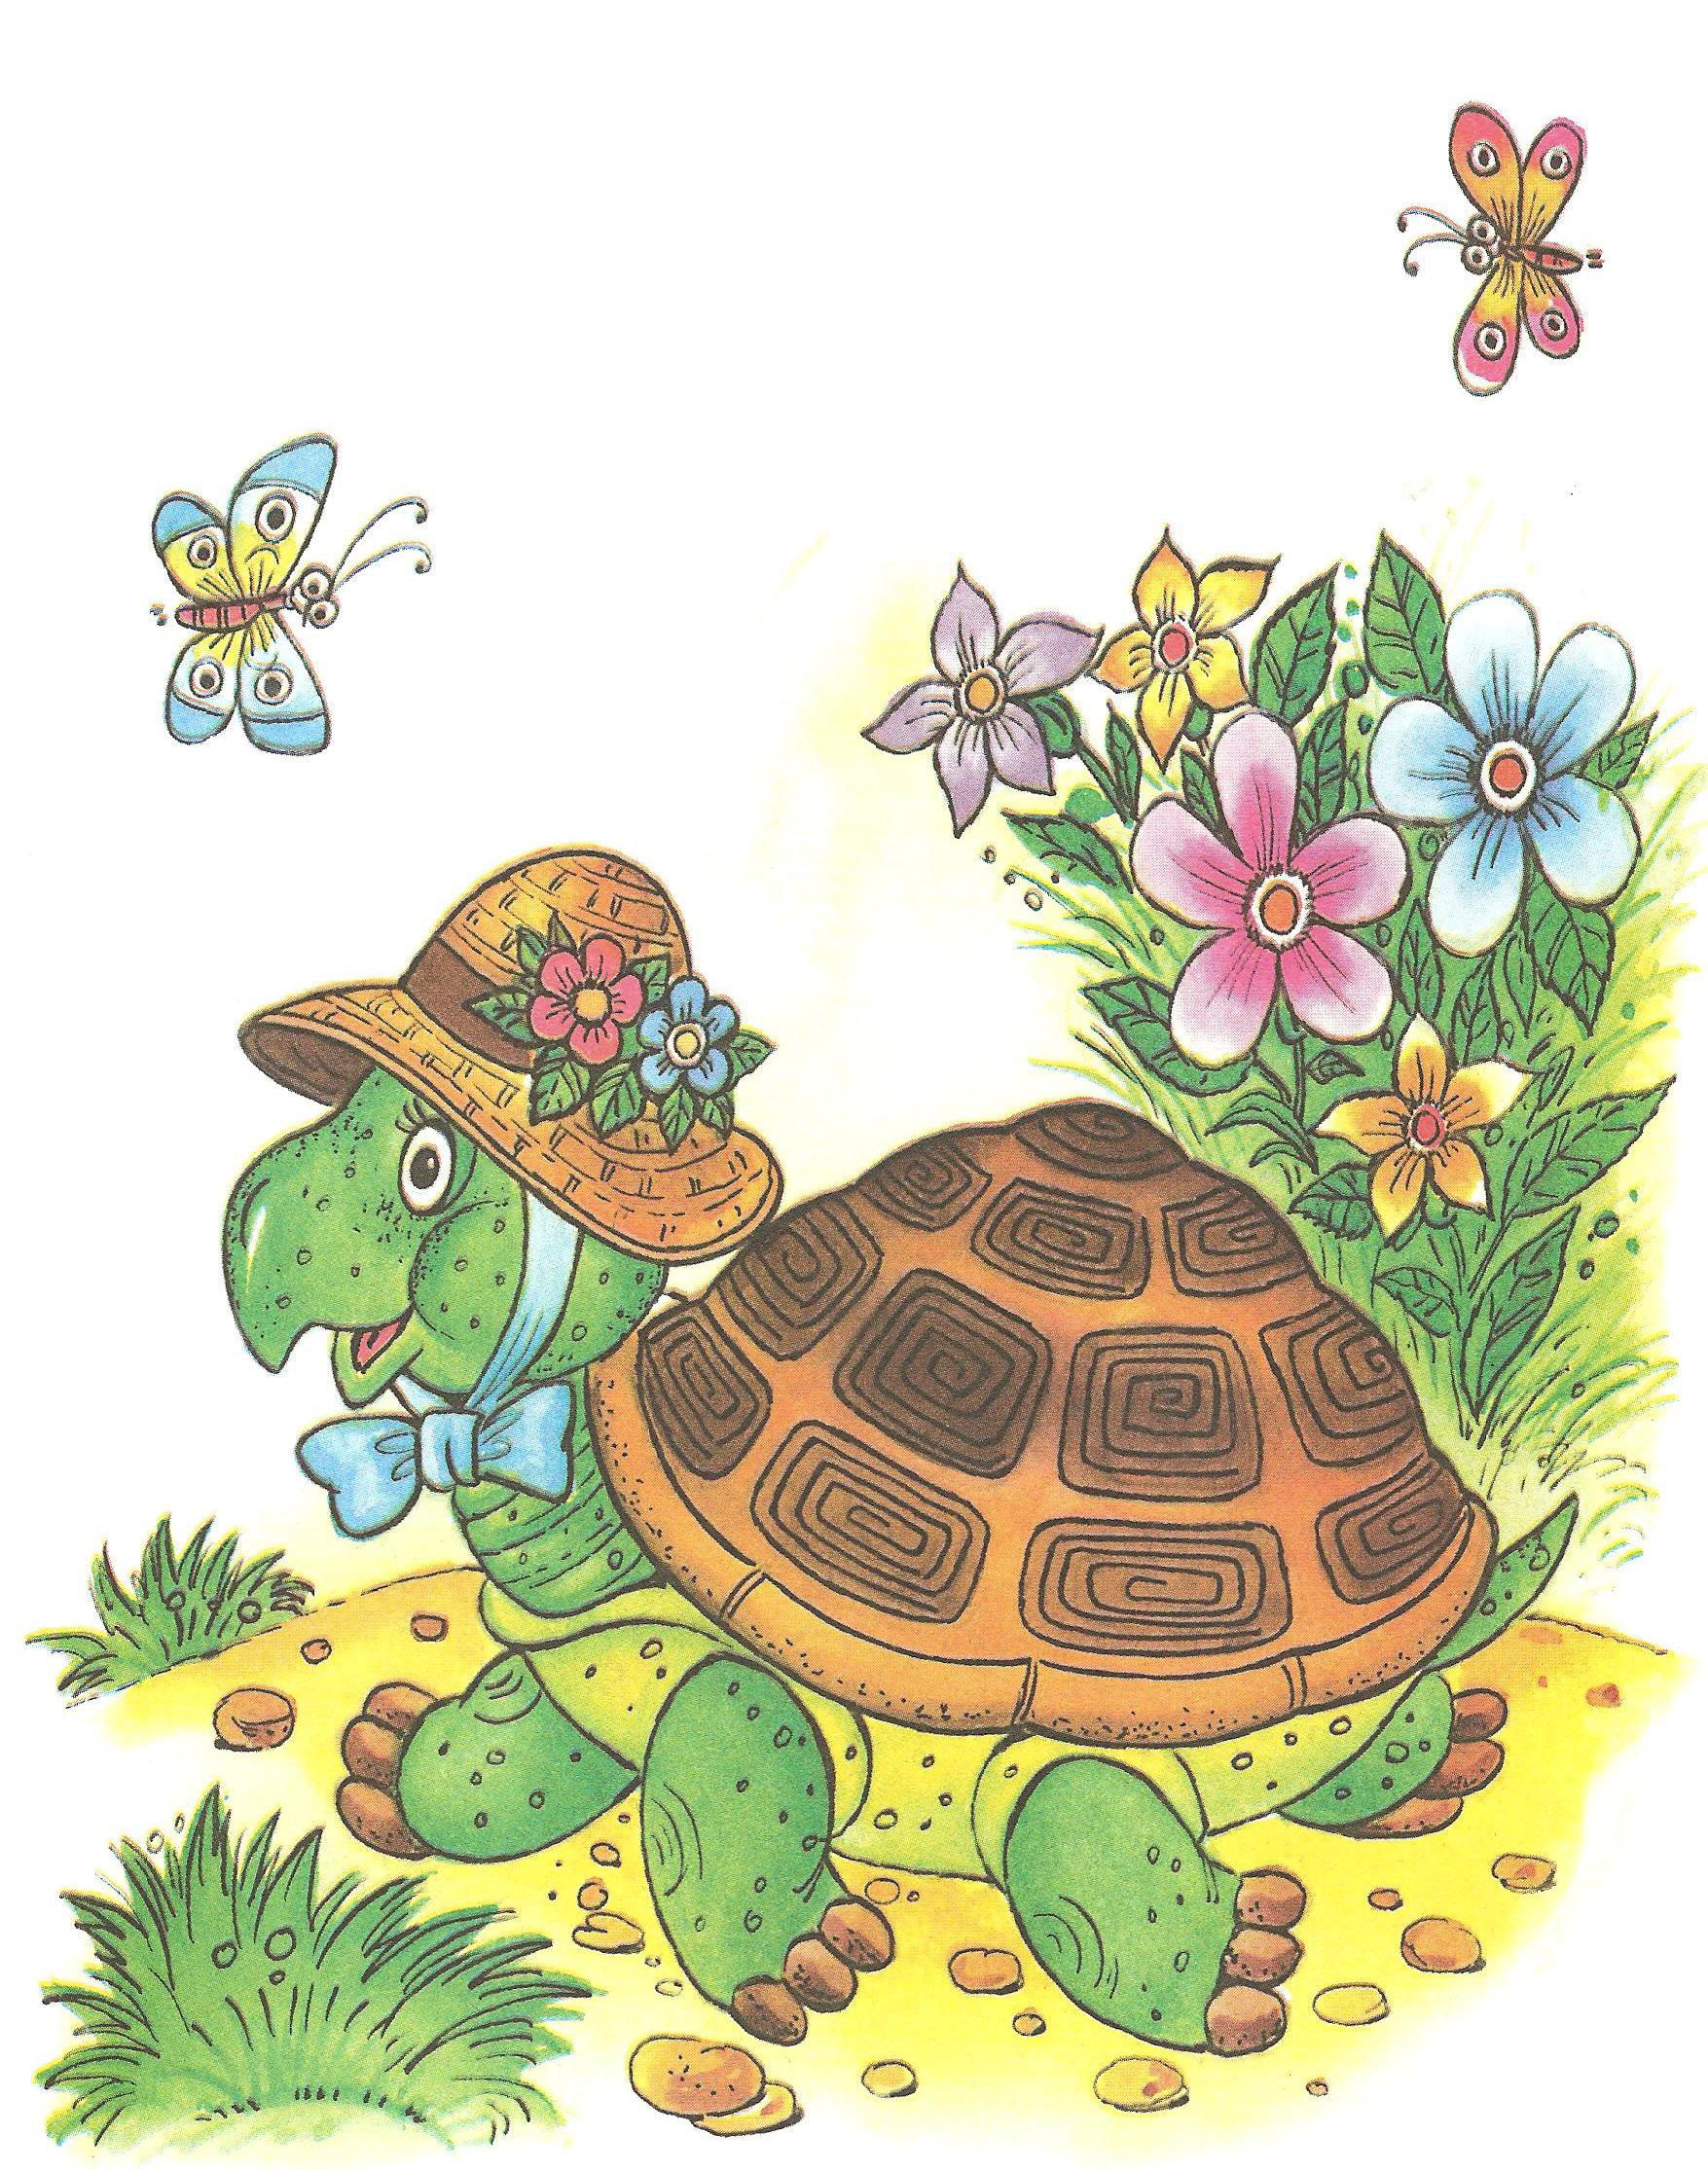 Читай про черепаху. Чуковский черепаха. Загадка про черепаху для детей. Стих про черепашку для детей. Стих про черепаху для детей.